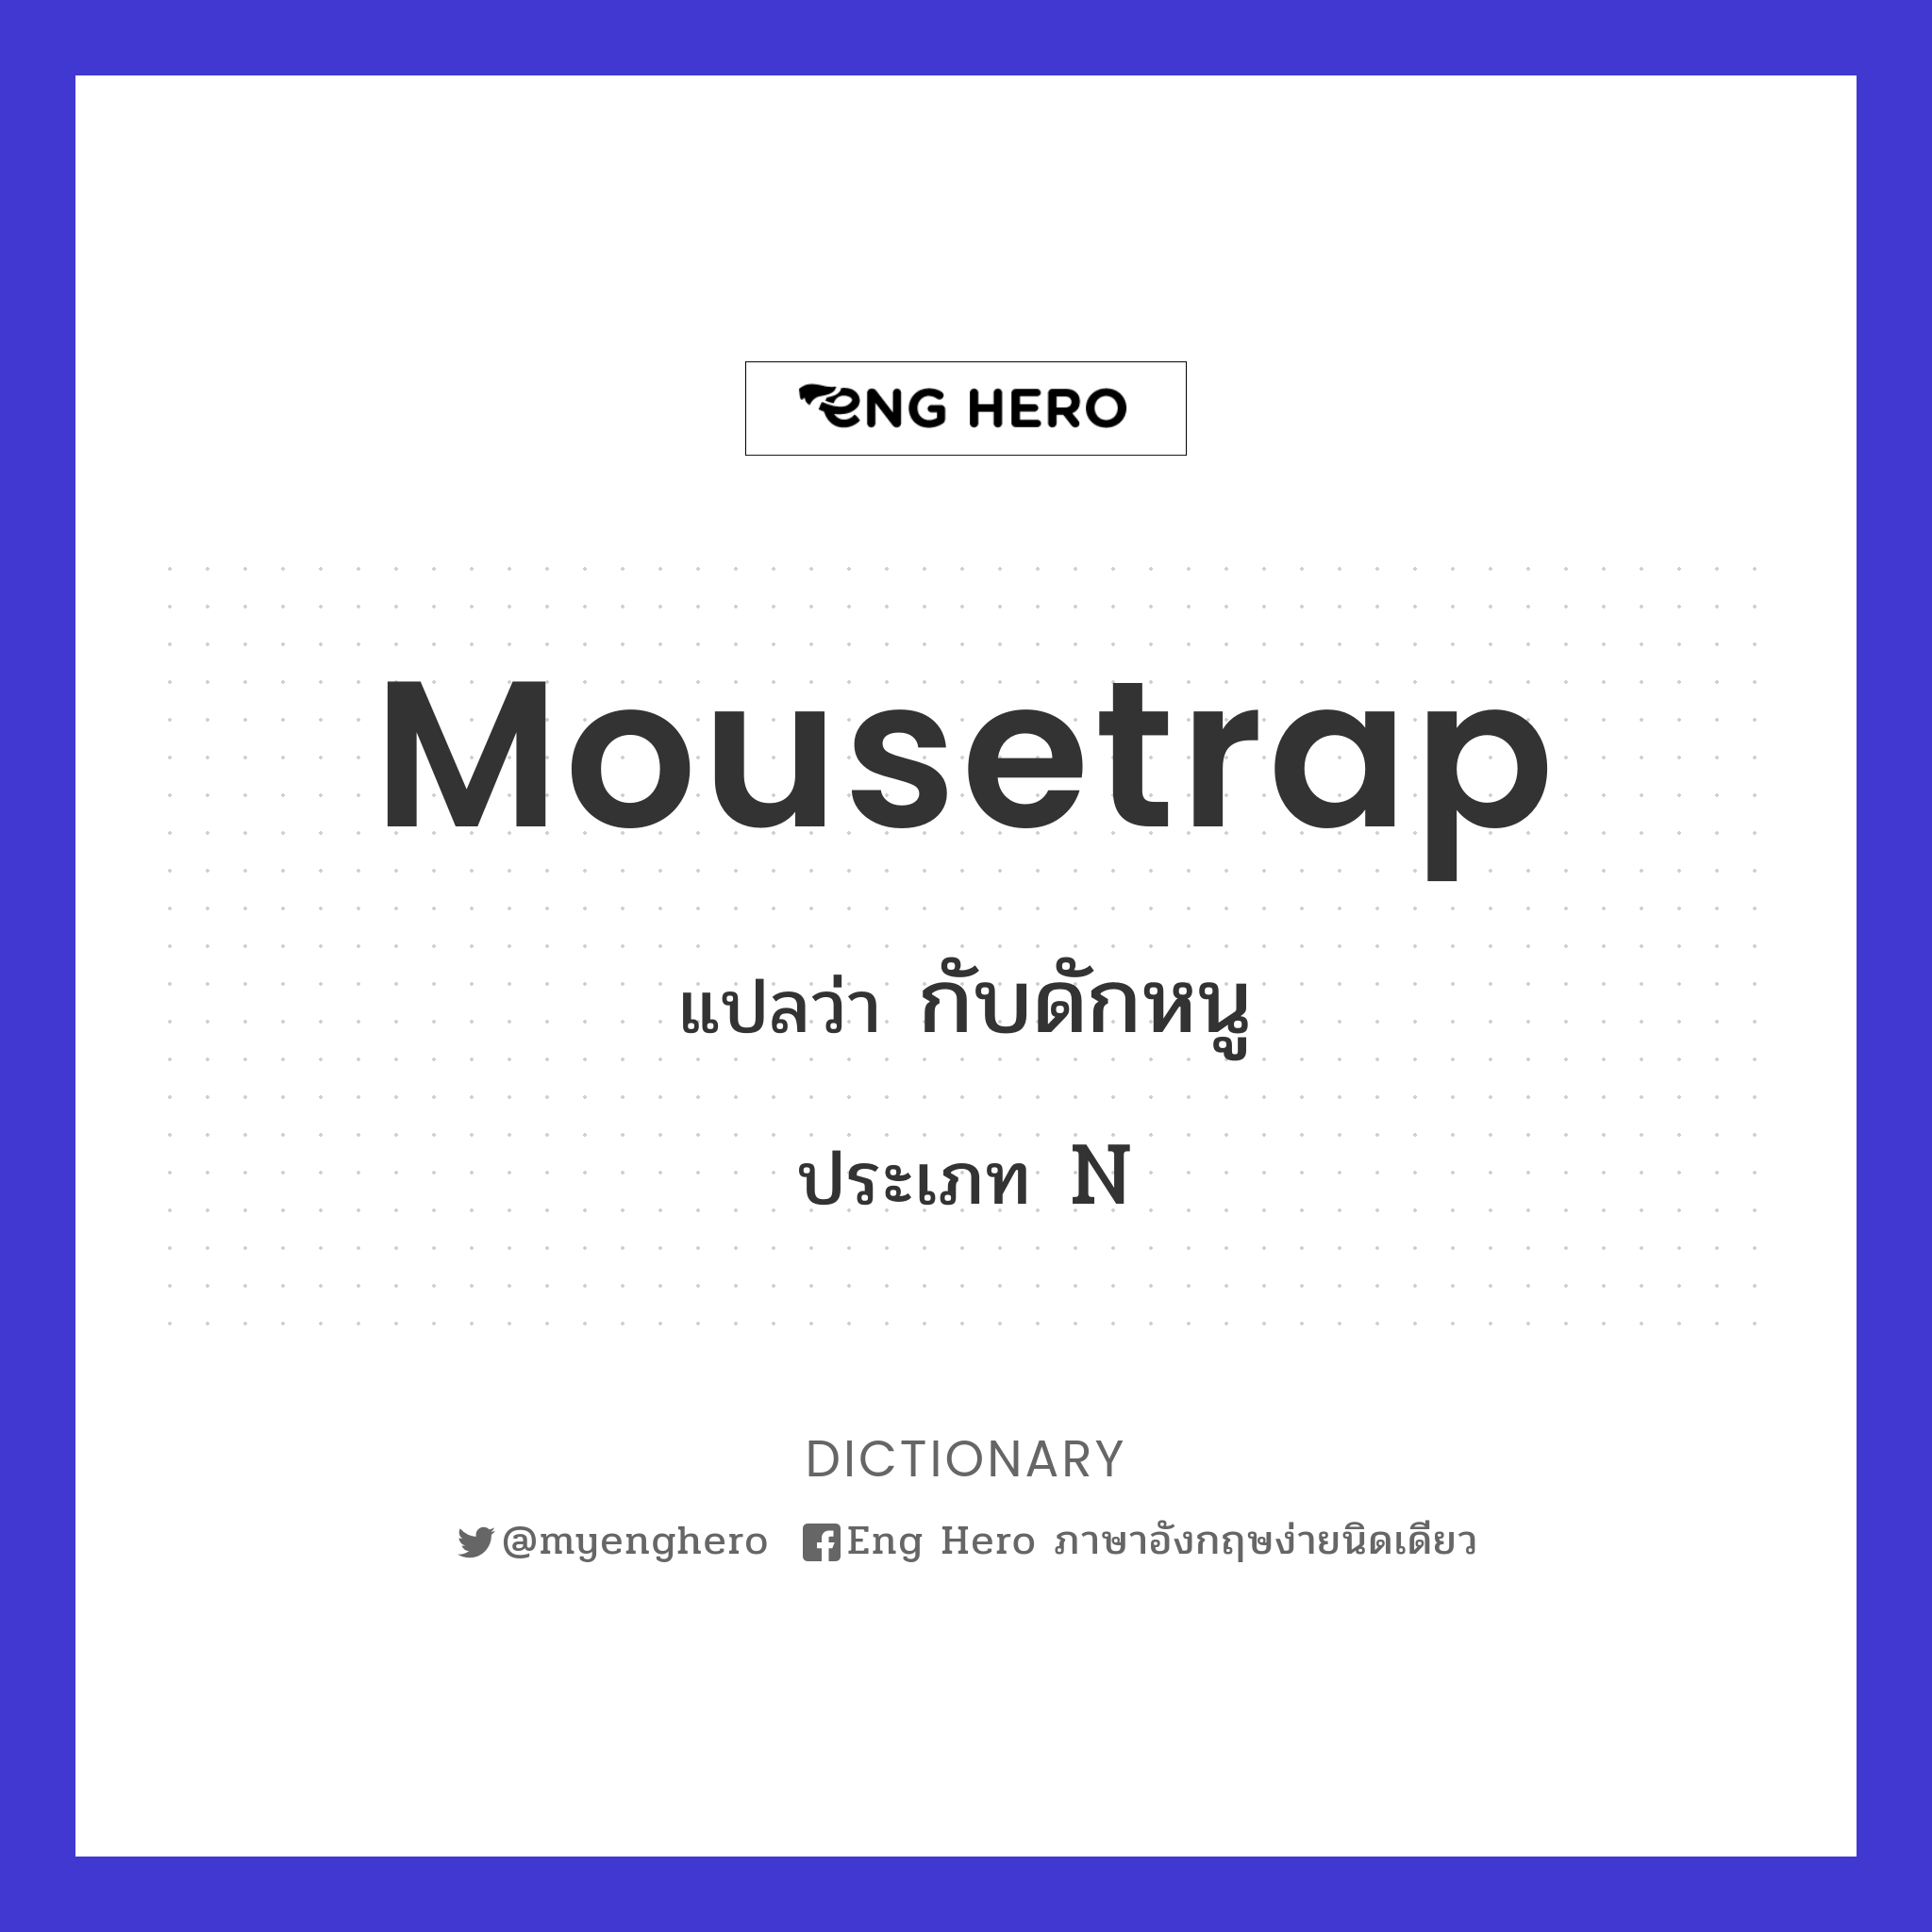 mousetrap